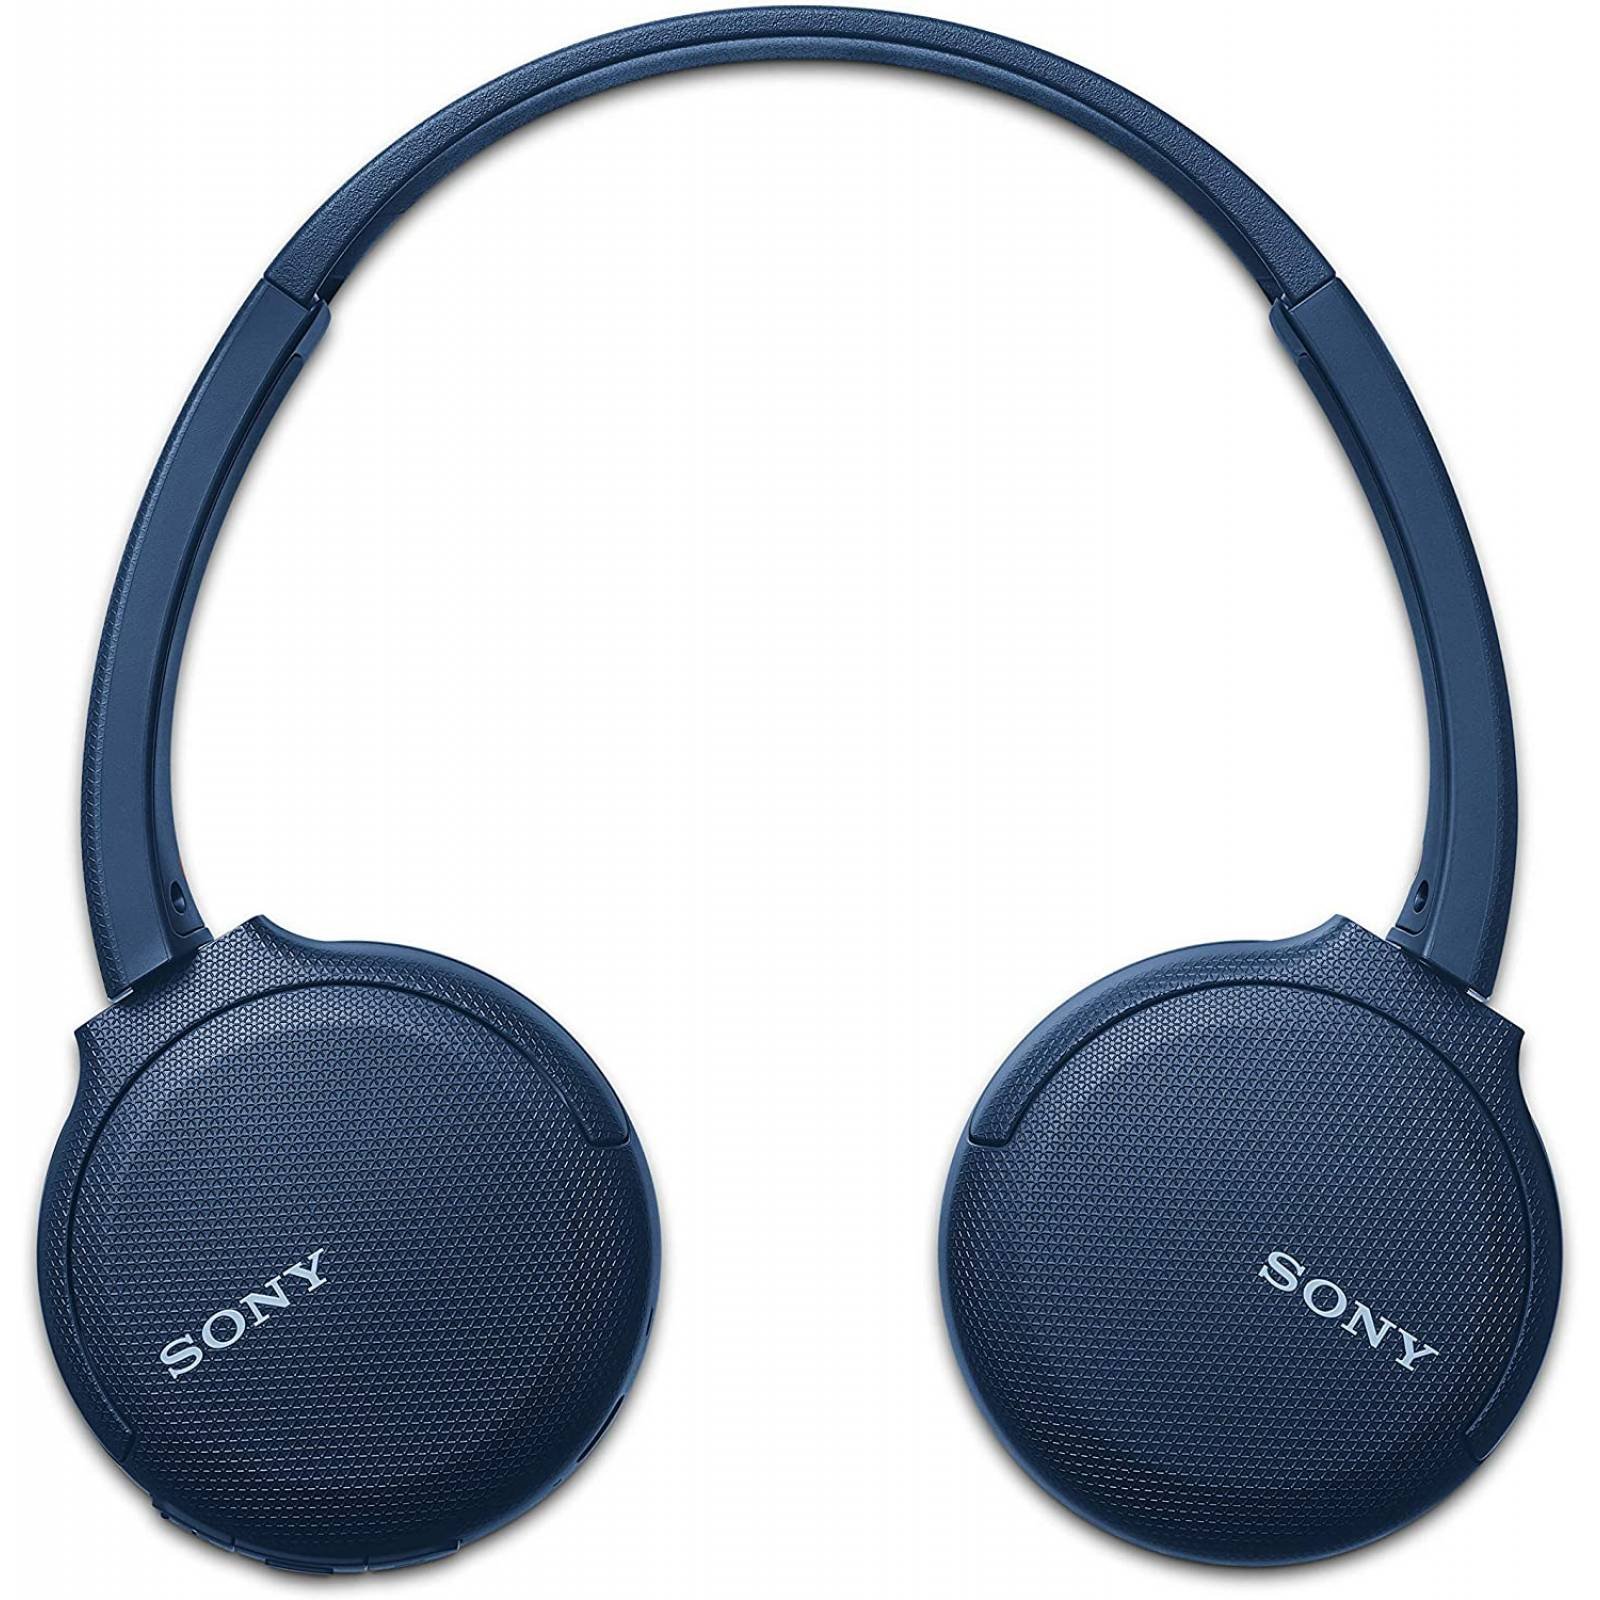 Auriculares de diadema inalámbricos Sony WH-CH520 Bluetooth negros · Sony ·  El Corte Inglés